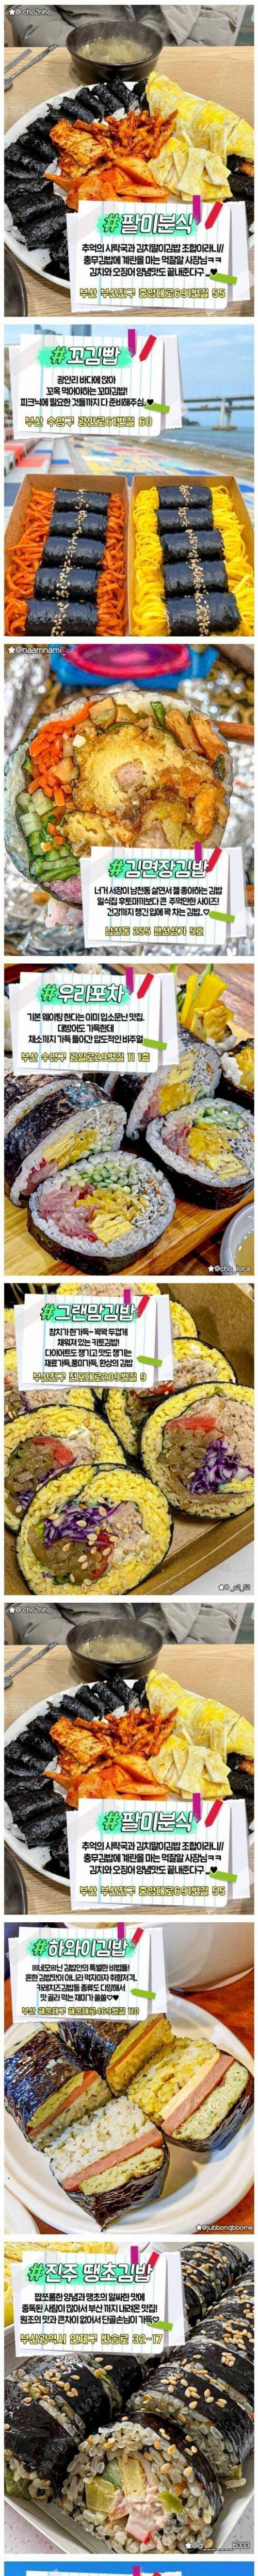 부산의 김밥 맛집들.jpg